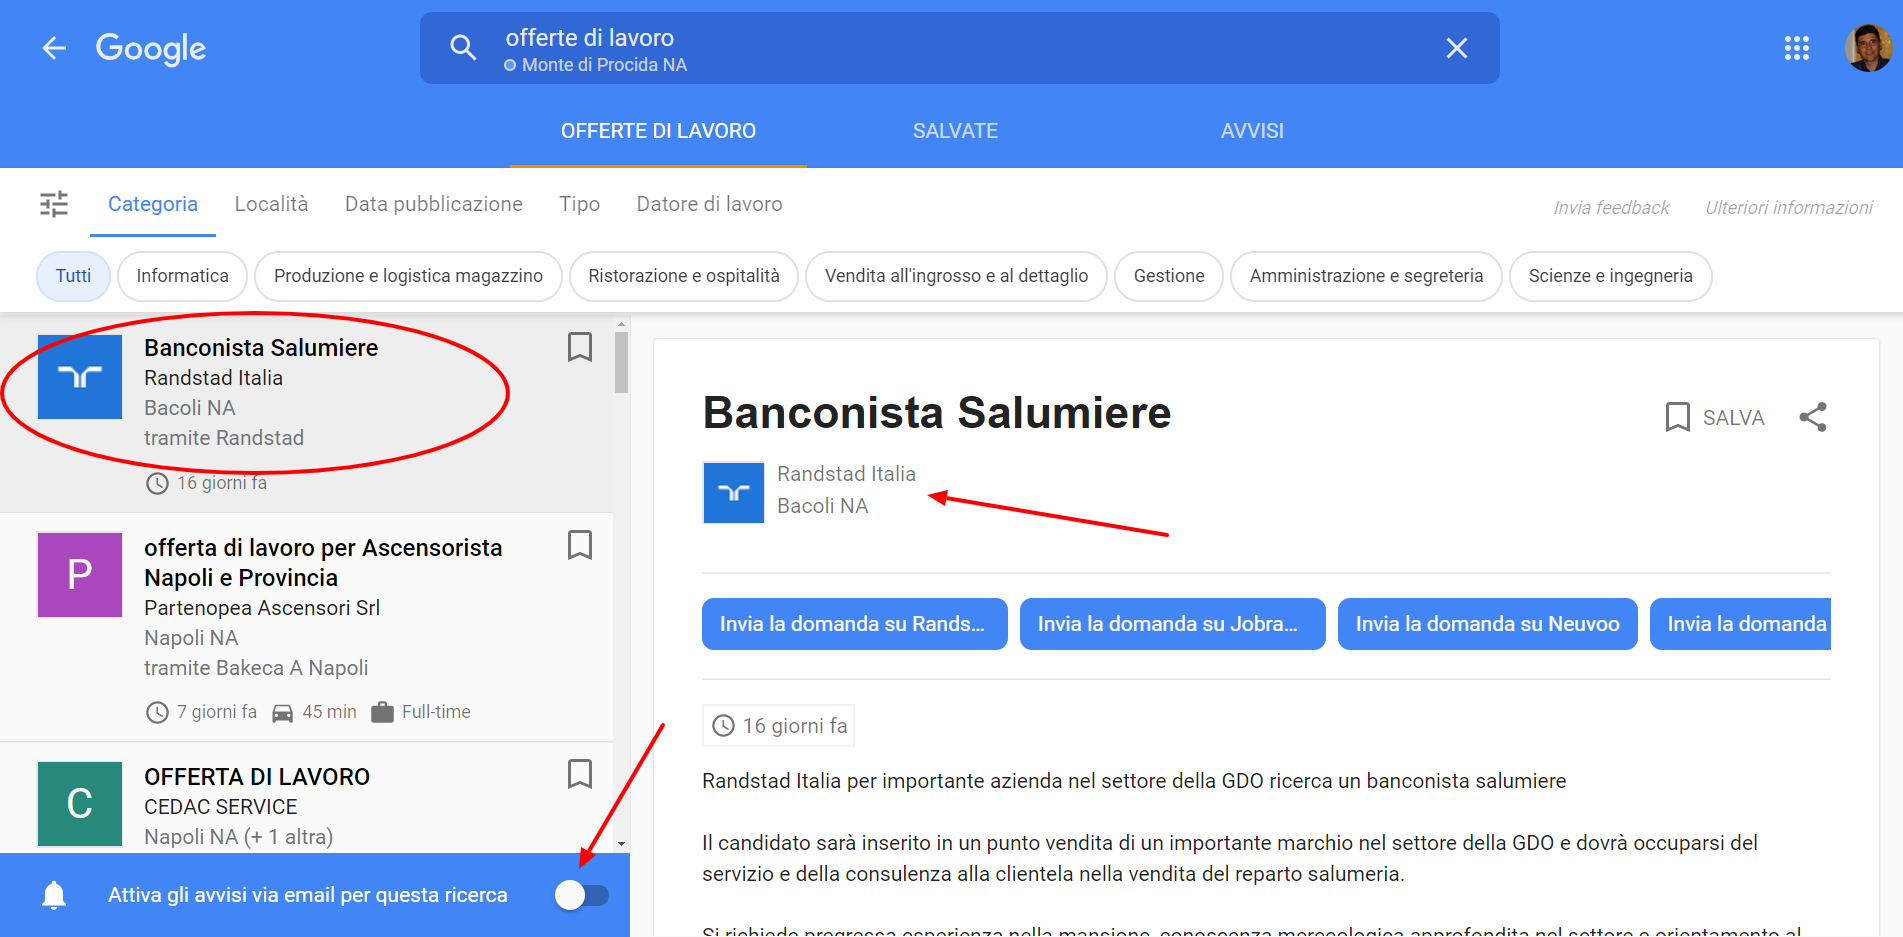 Google, da oggi anche in Italia è più semplice cercare offerte di lavoro –  Monte di Procida